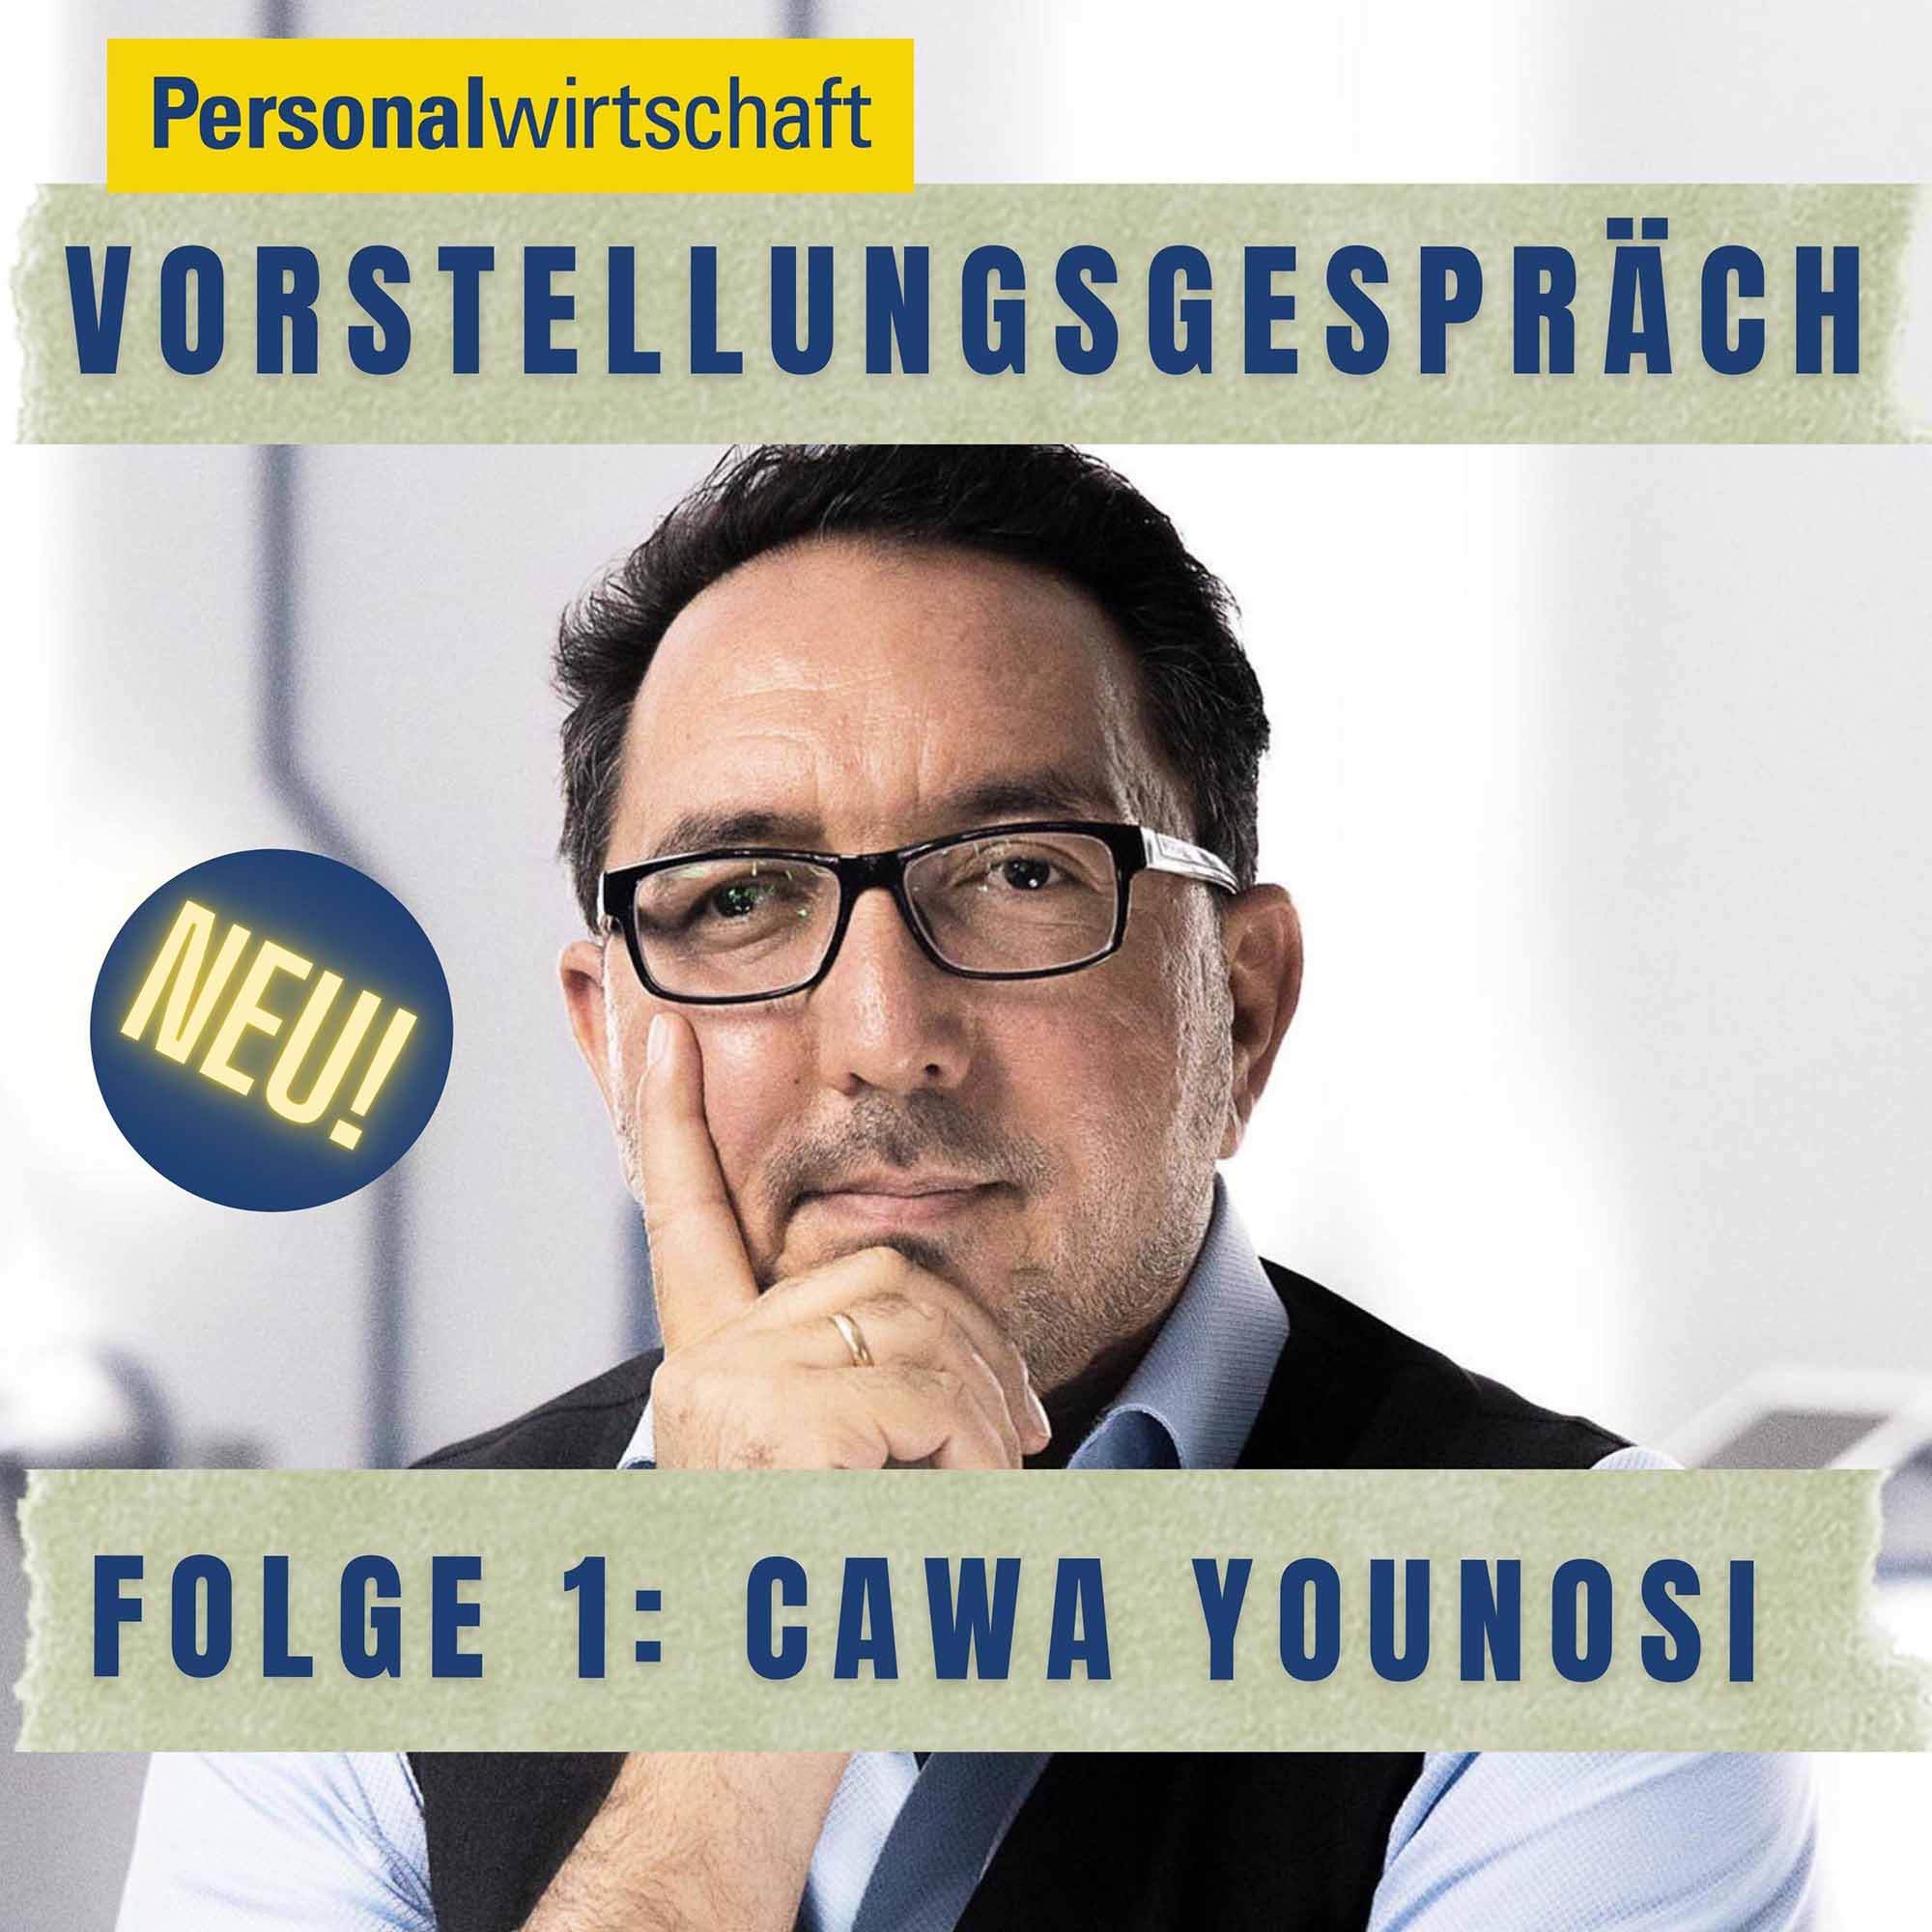 Folge 1: Cawa Younosi – Mit Vertrauen und Selbstreflexion zum HR-Influencer